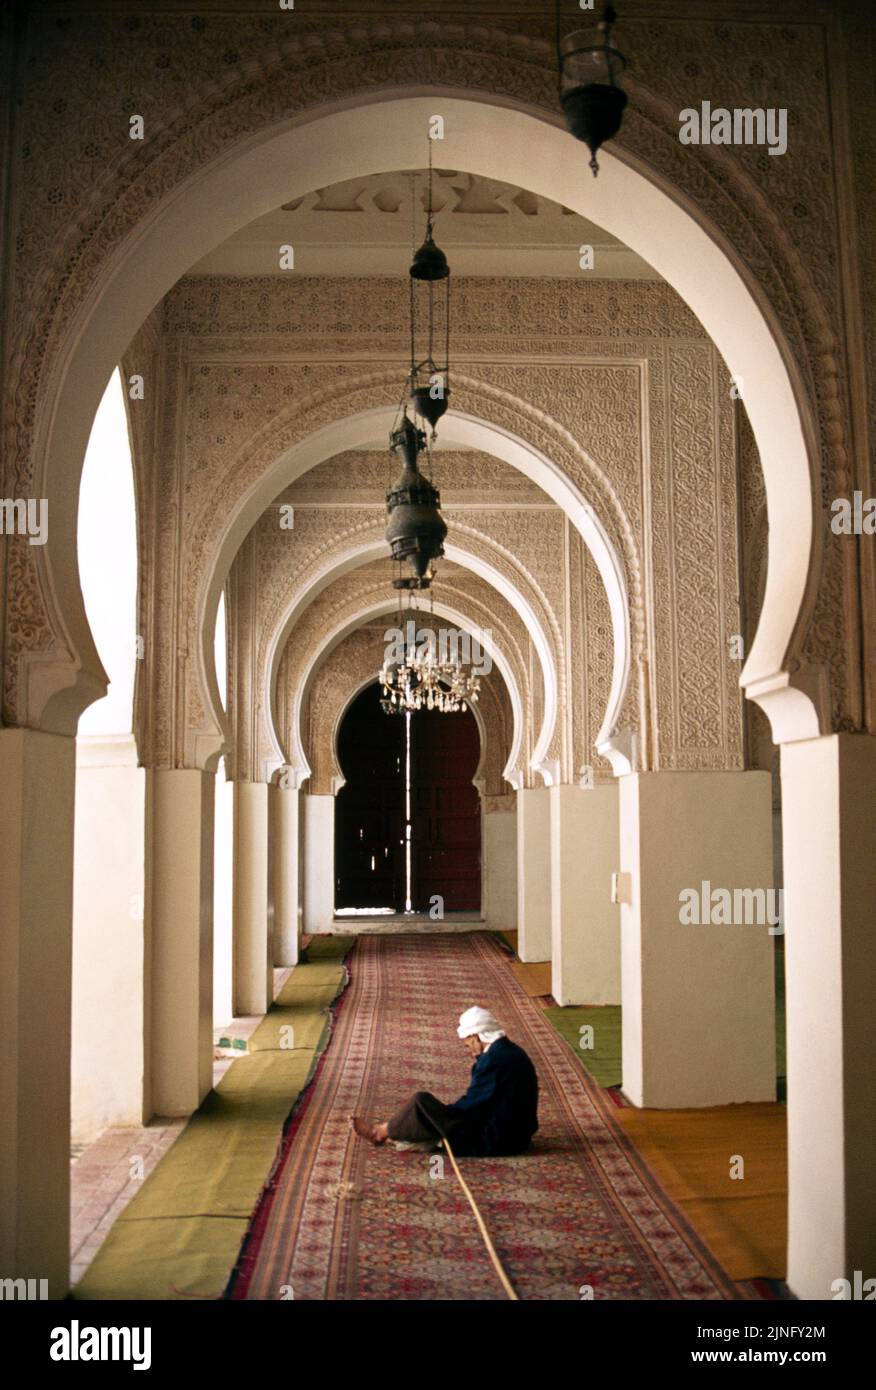 Tlemcen Algeria Mosque Interior Man Sitting On Floor Stock Photo